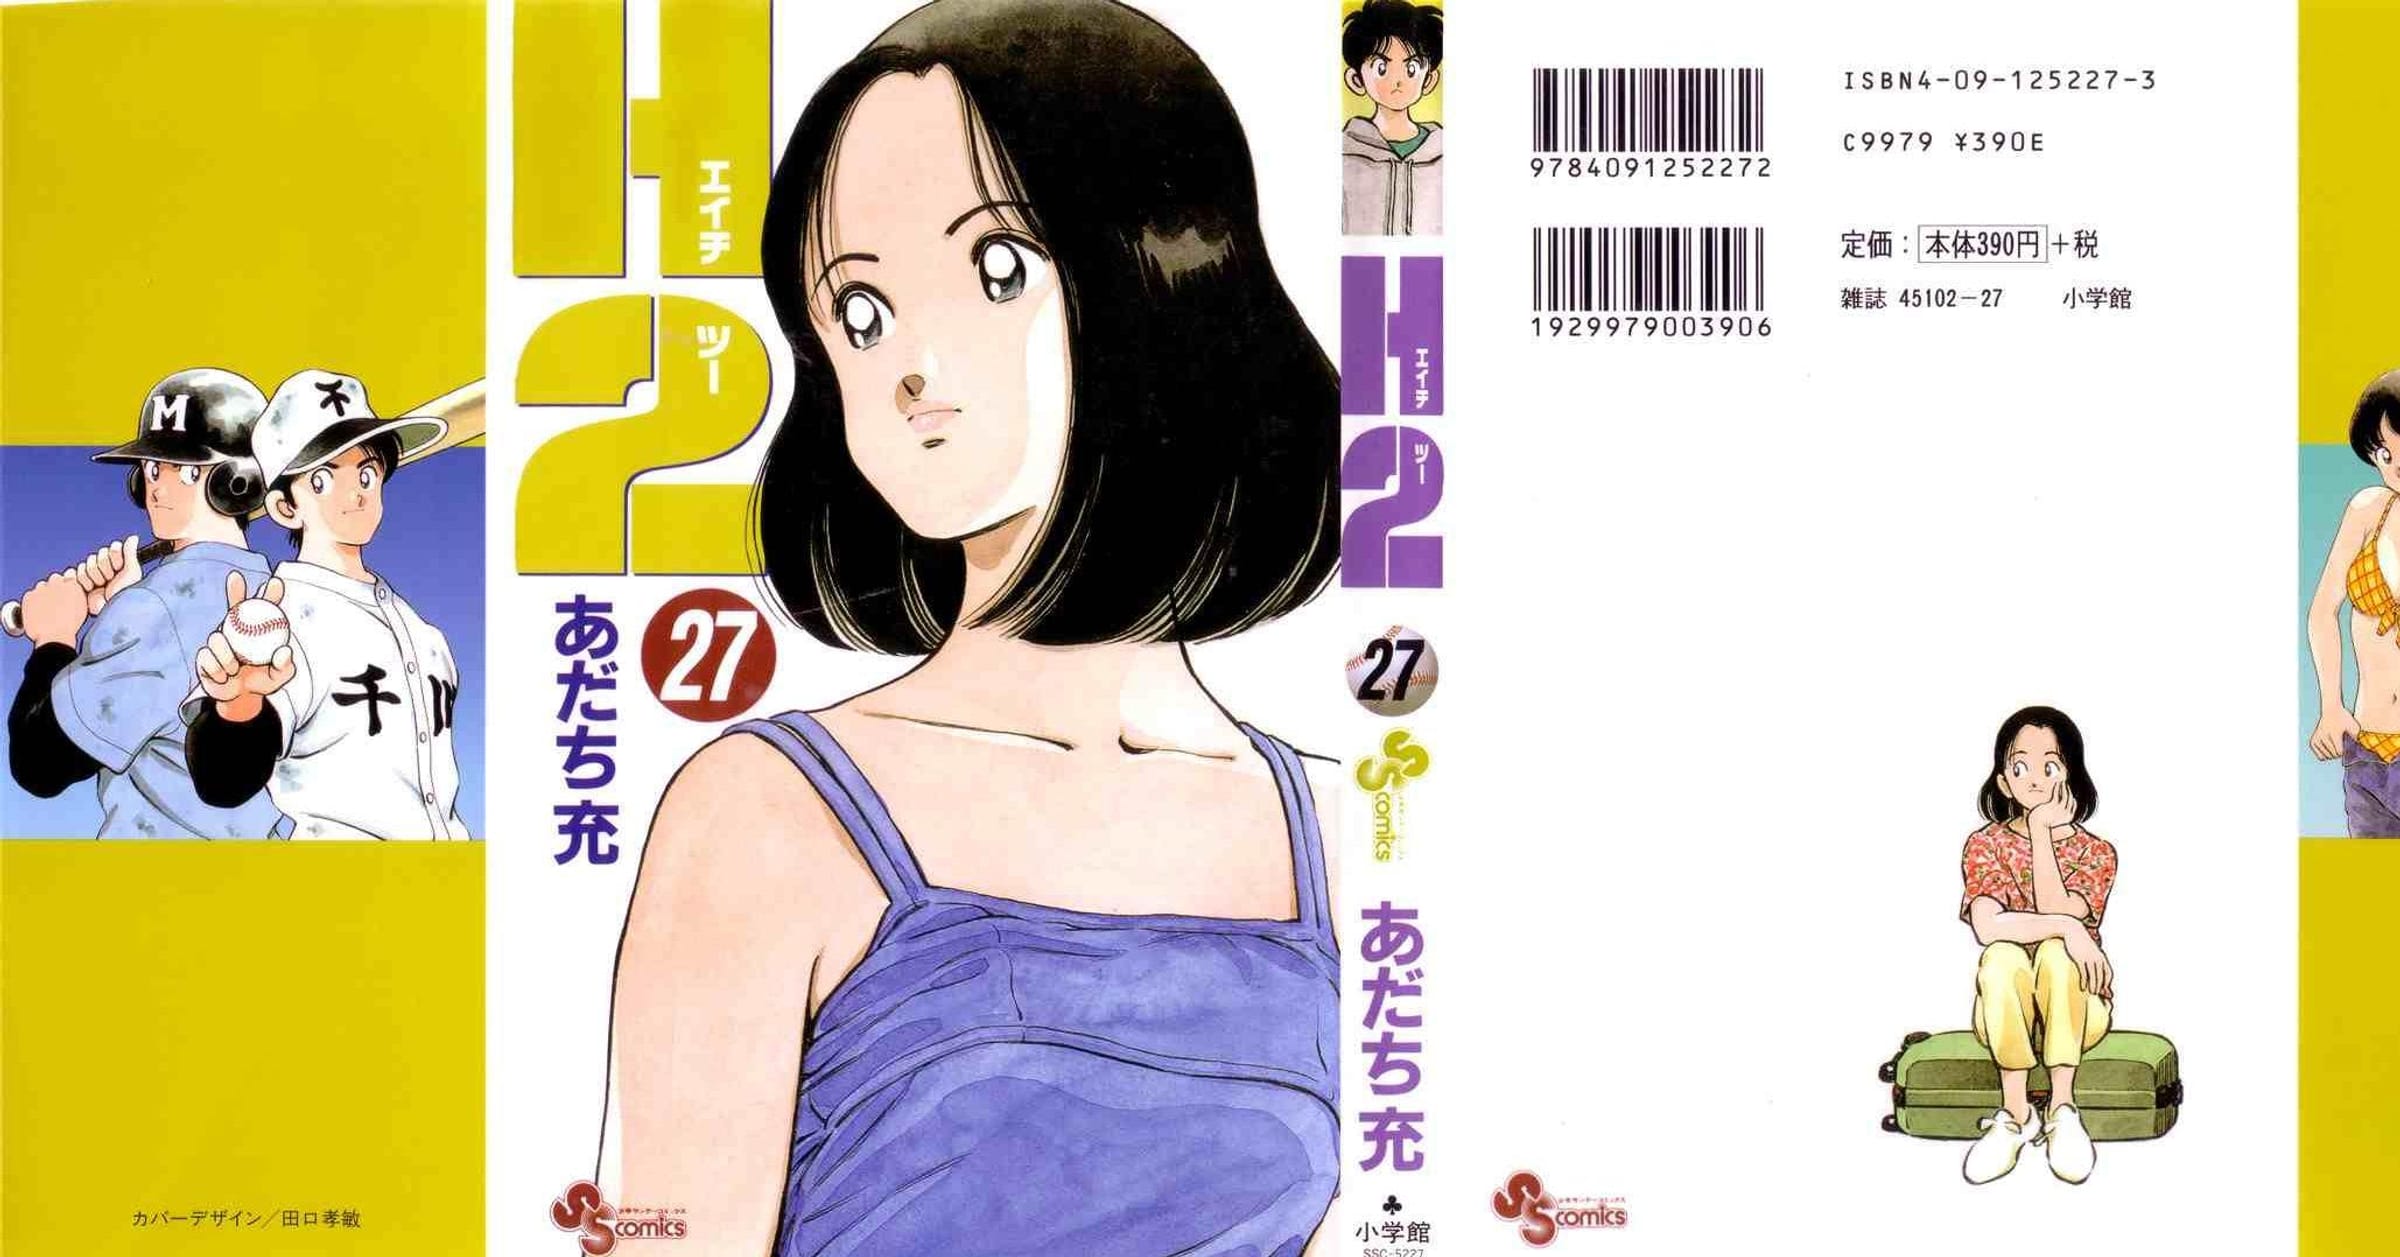 My Spiritual Girlfriends - Baka-Updates Manga